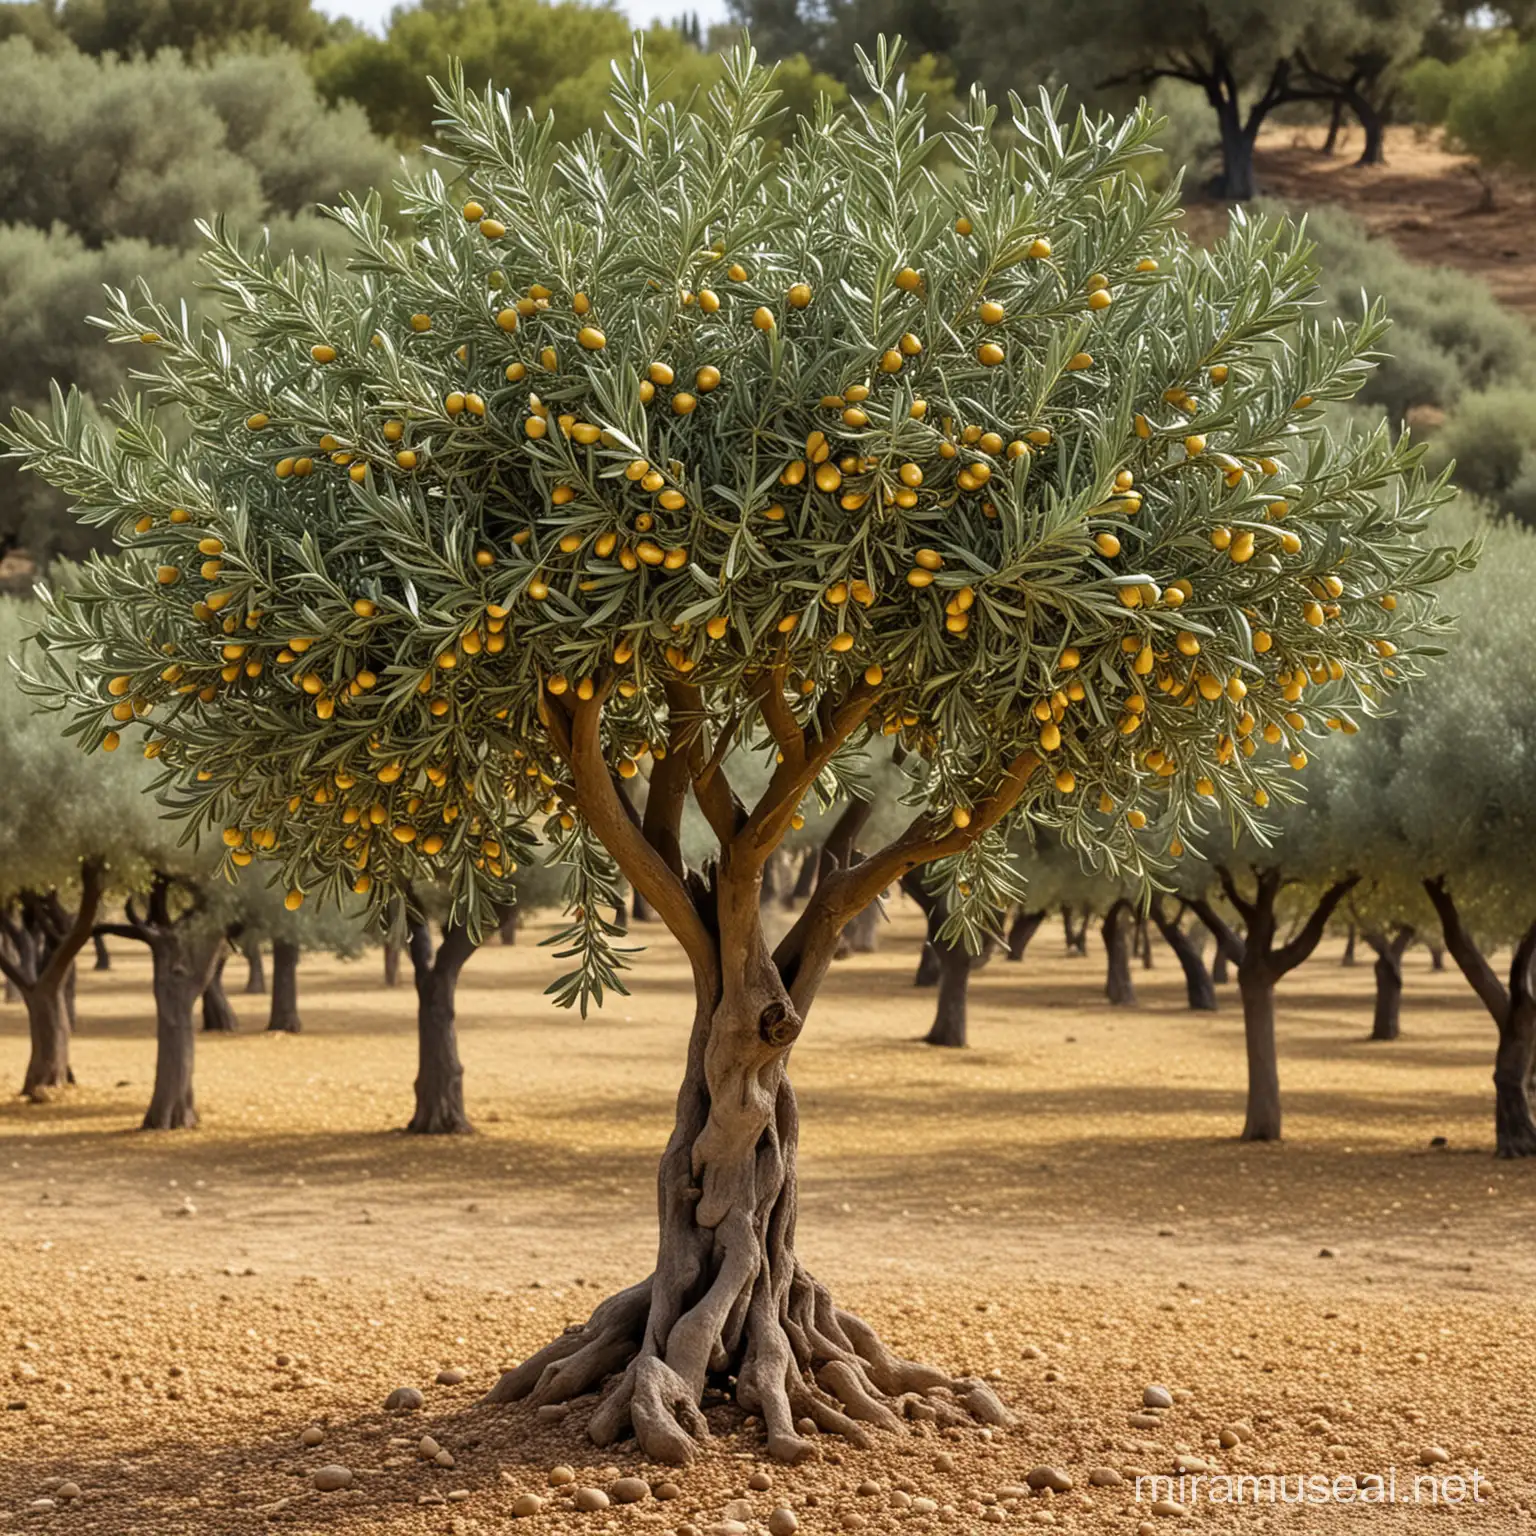 Majestic Olive Tree with Golden Olives Natures Elegance Captured in Art